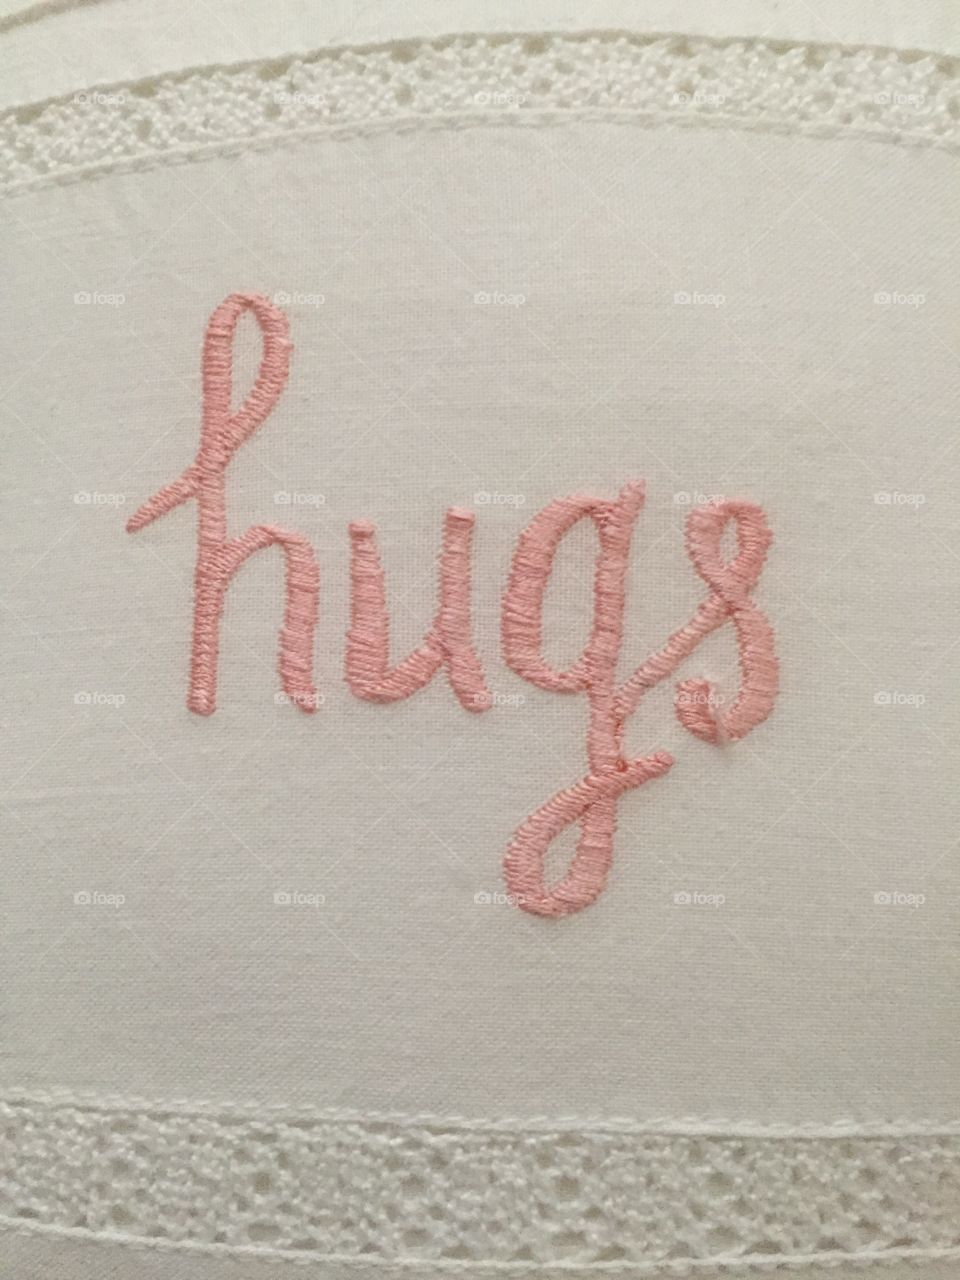 Hug text on fabric